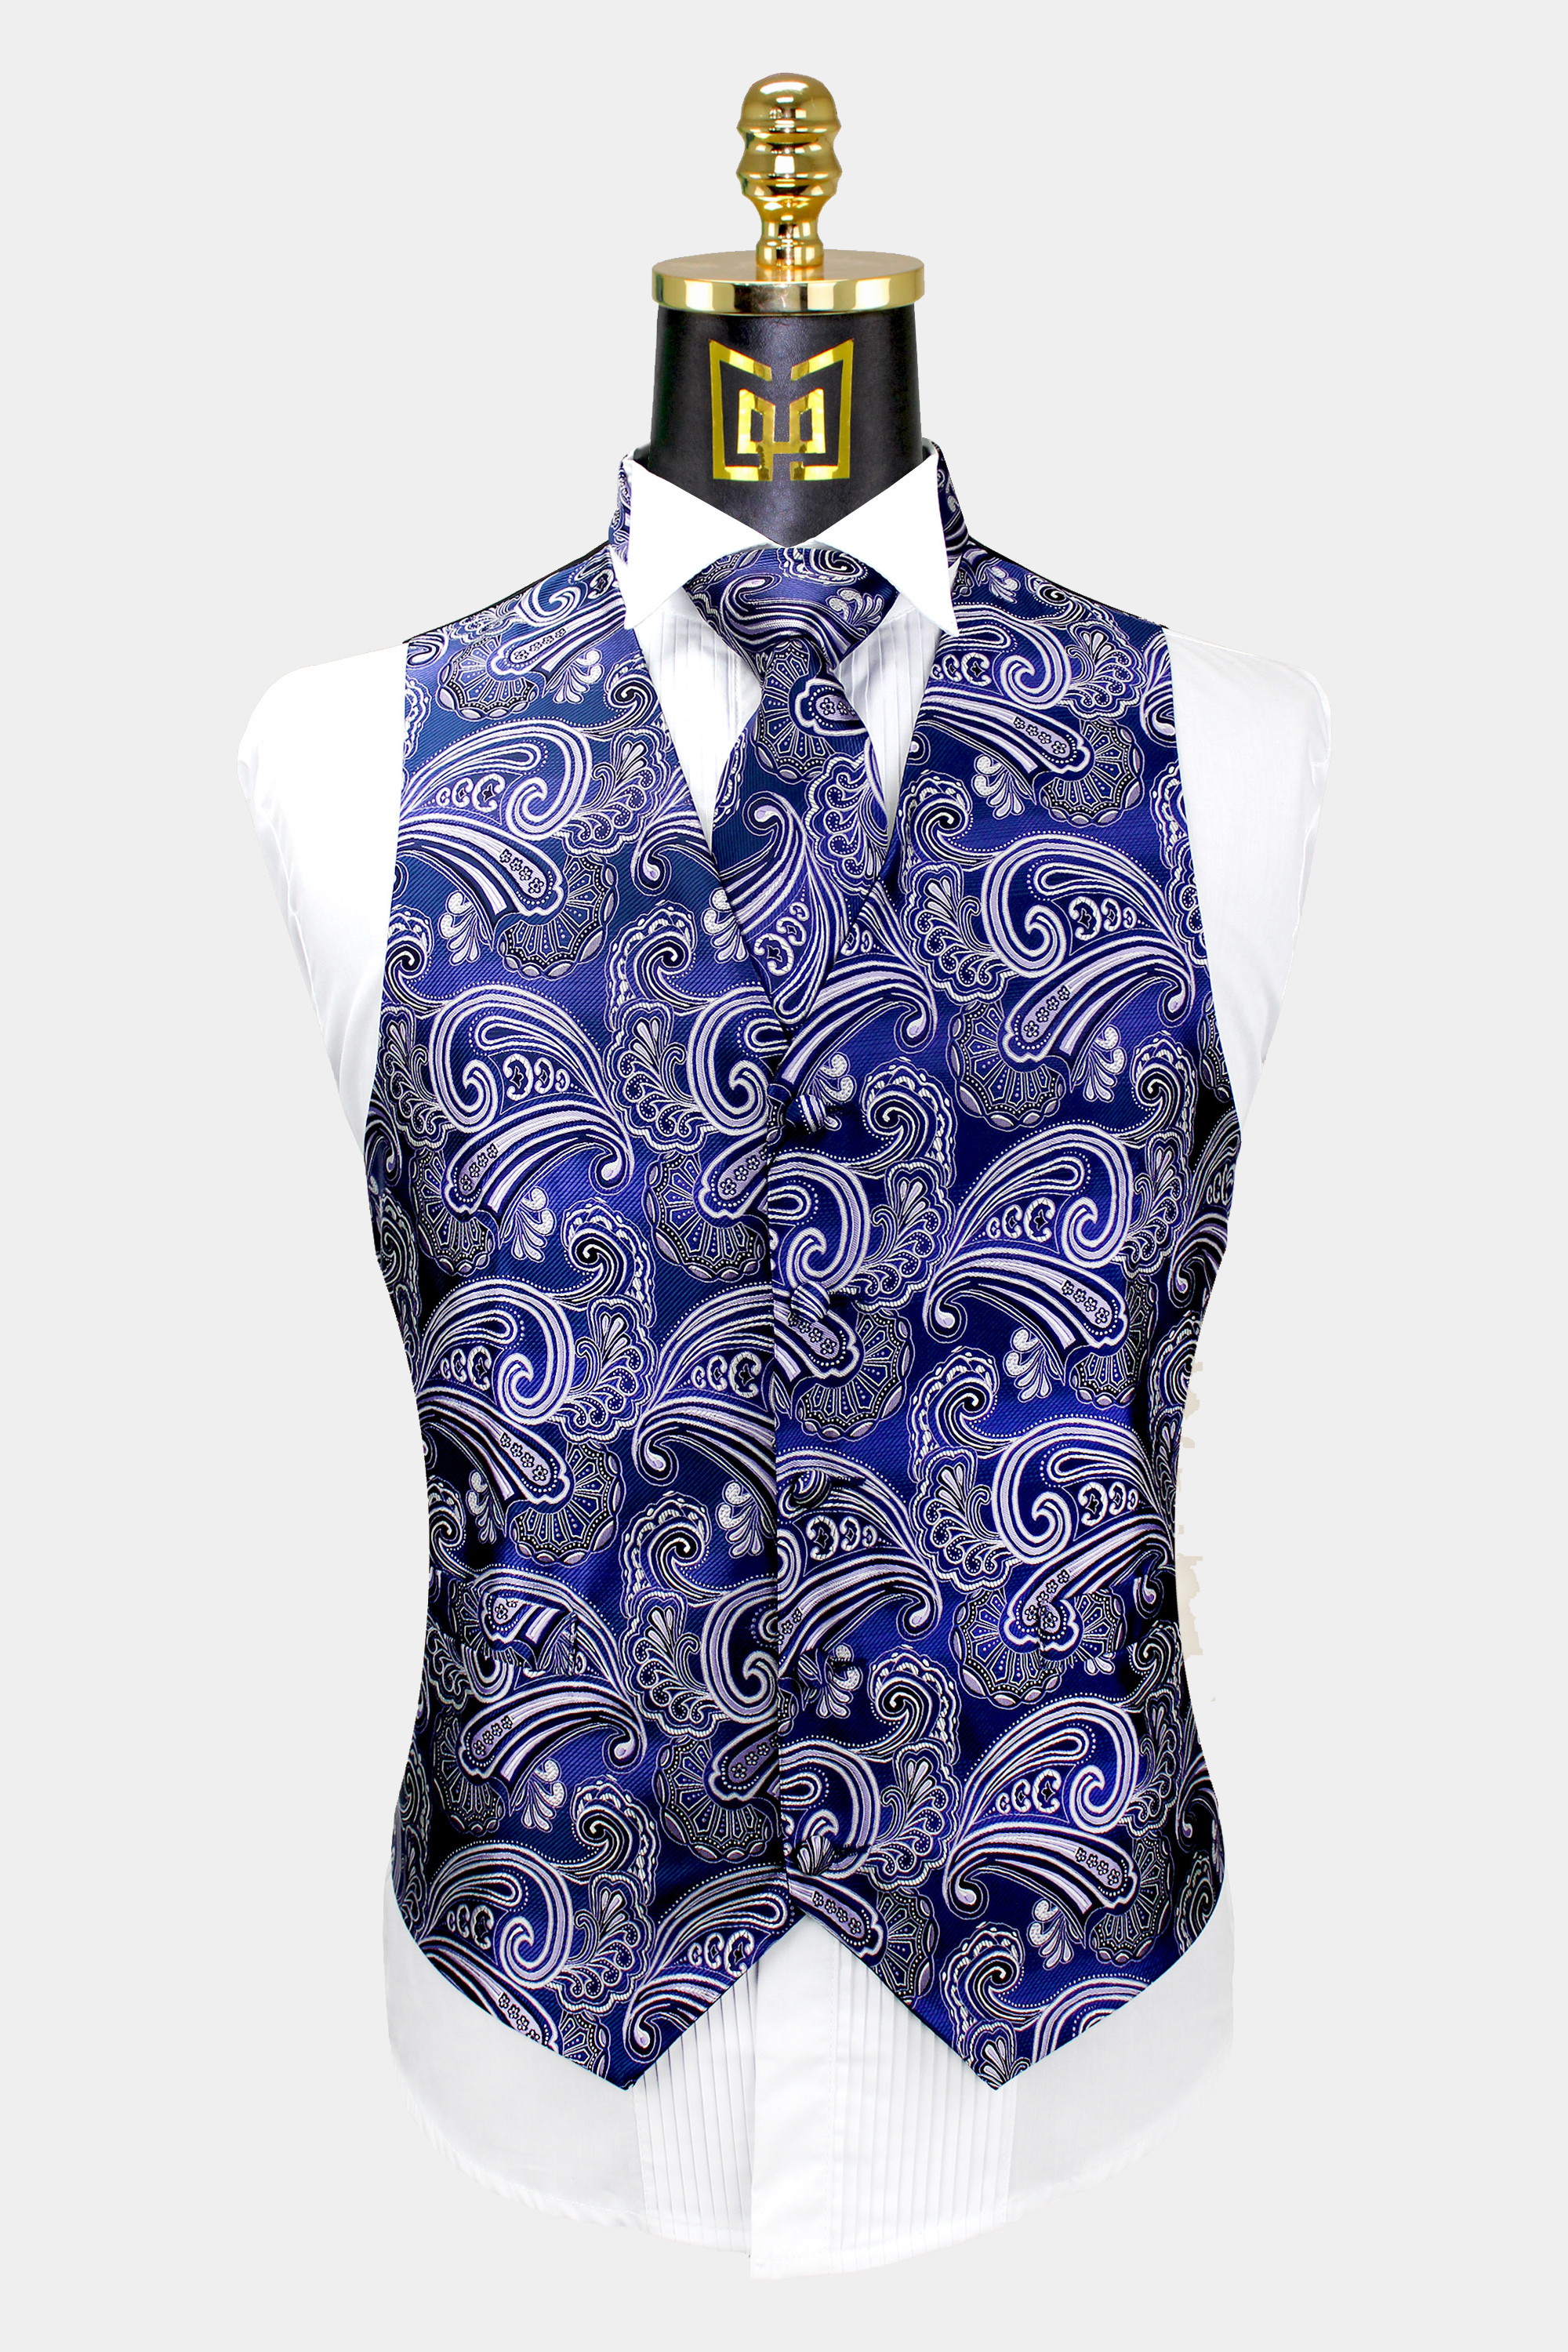 Mens-Cobalt-Blue-Paisley-Vest-and-Tie-Set-Gromm-Wedding-Tuxedo-Vest-from-Gentlemansguru.com_